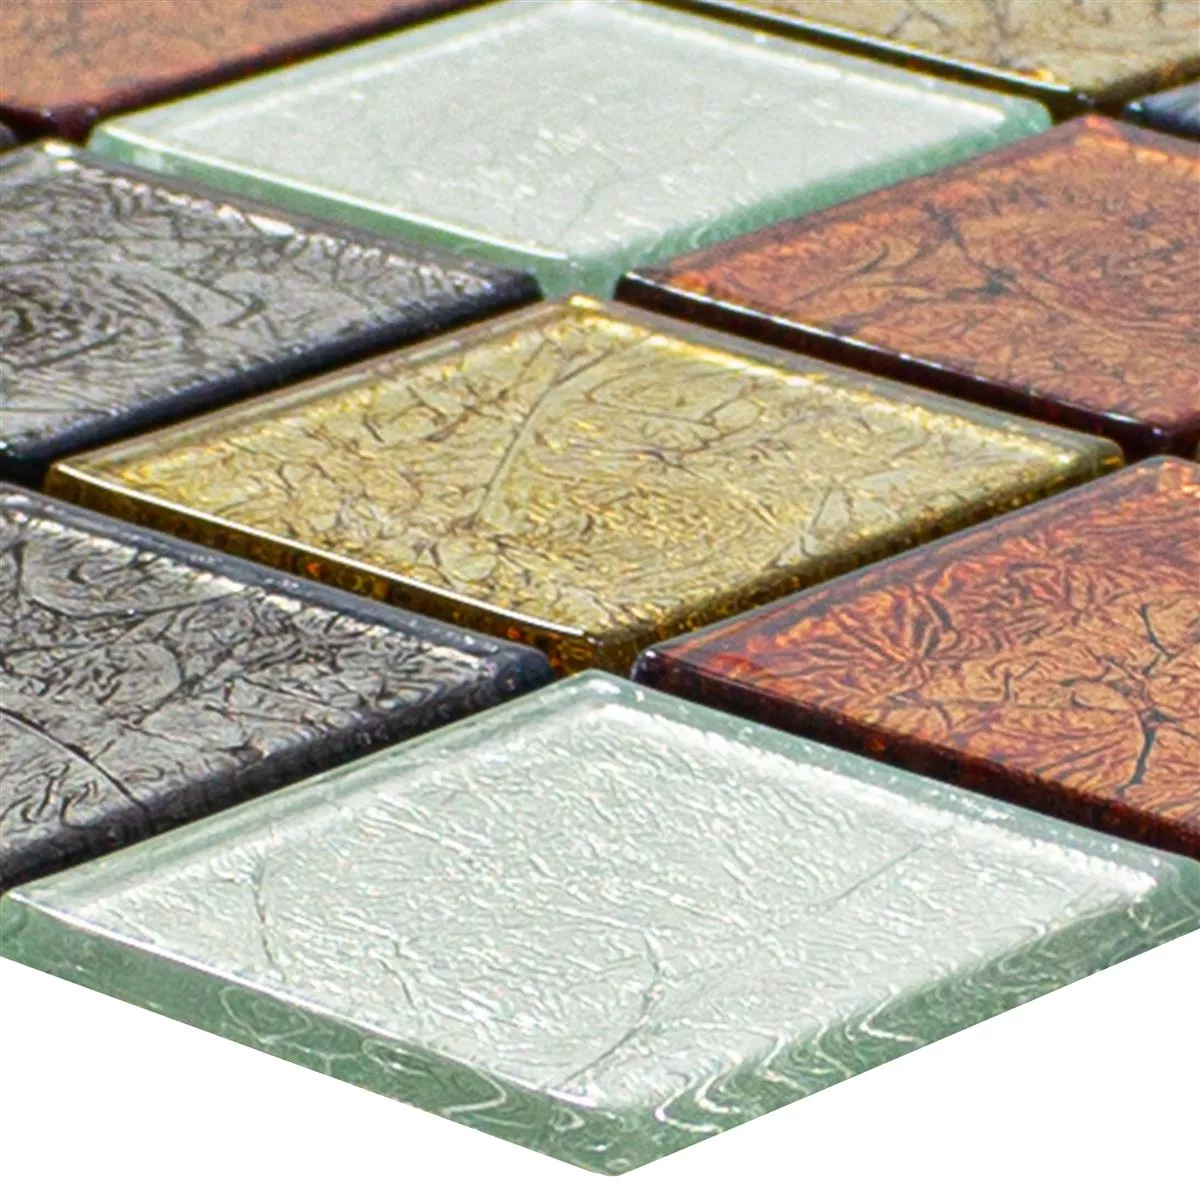 Mosaico Di Vetro Piastrelle Curlew Rosso Marrone Argento Q48 4mm 